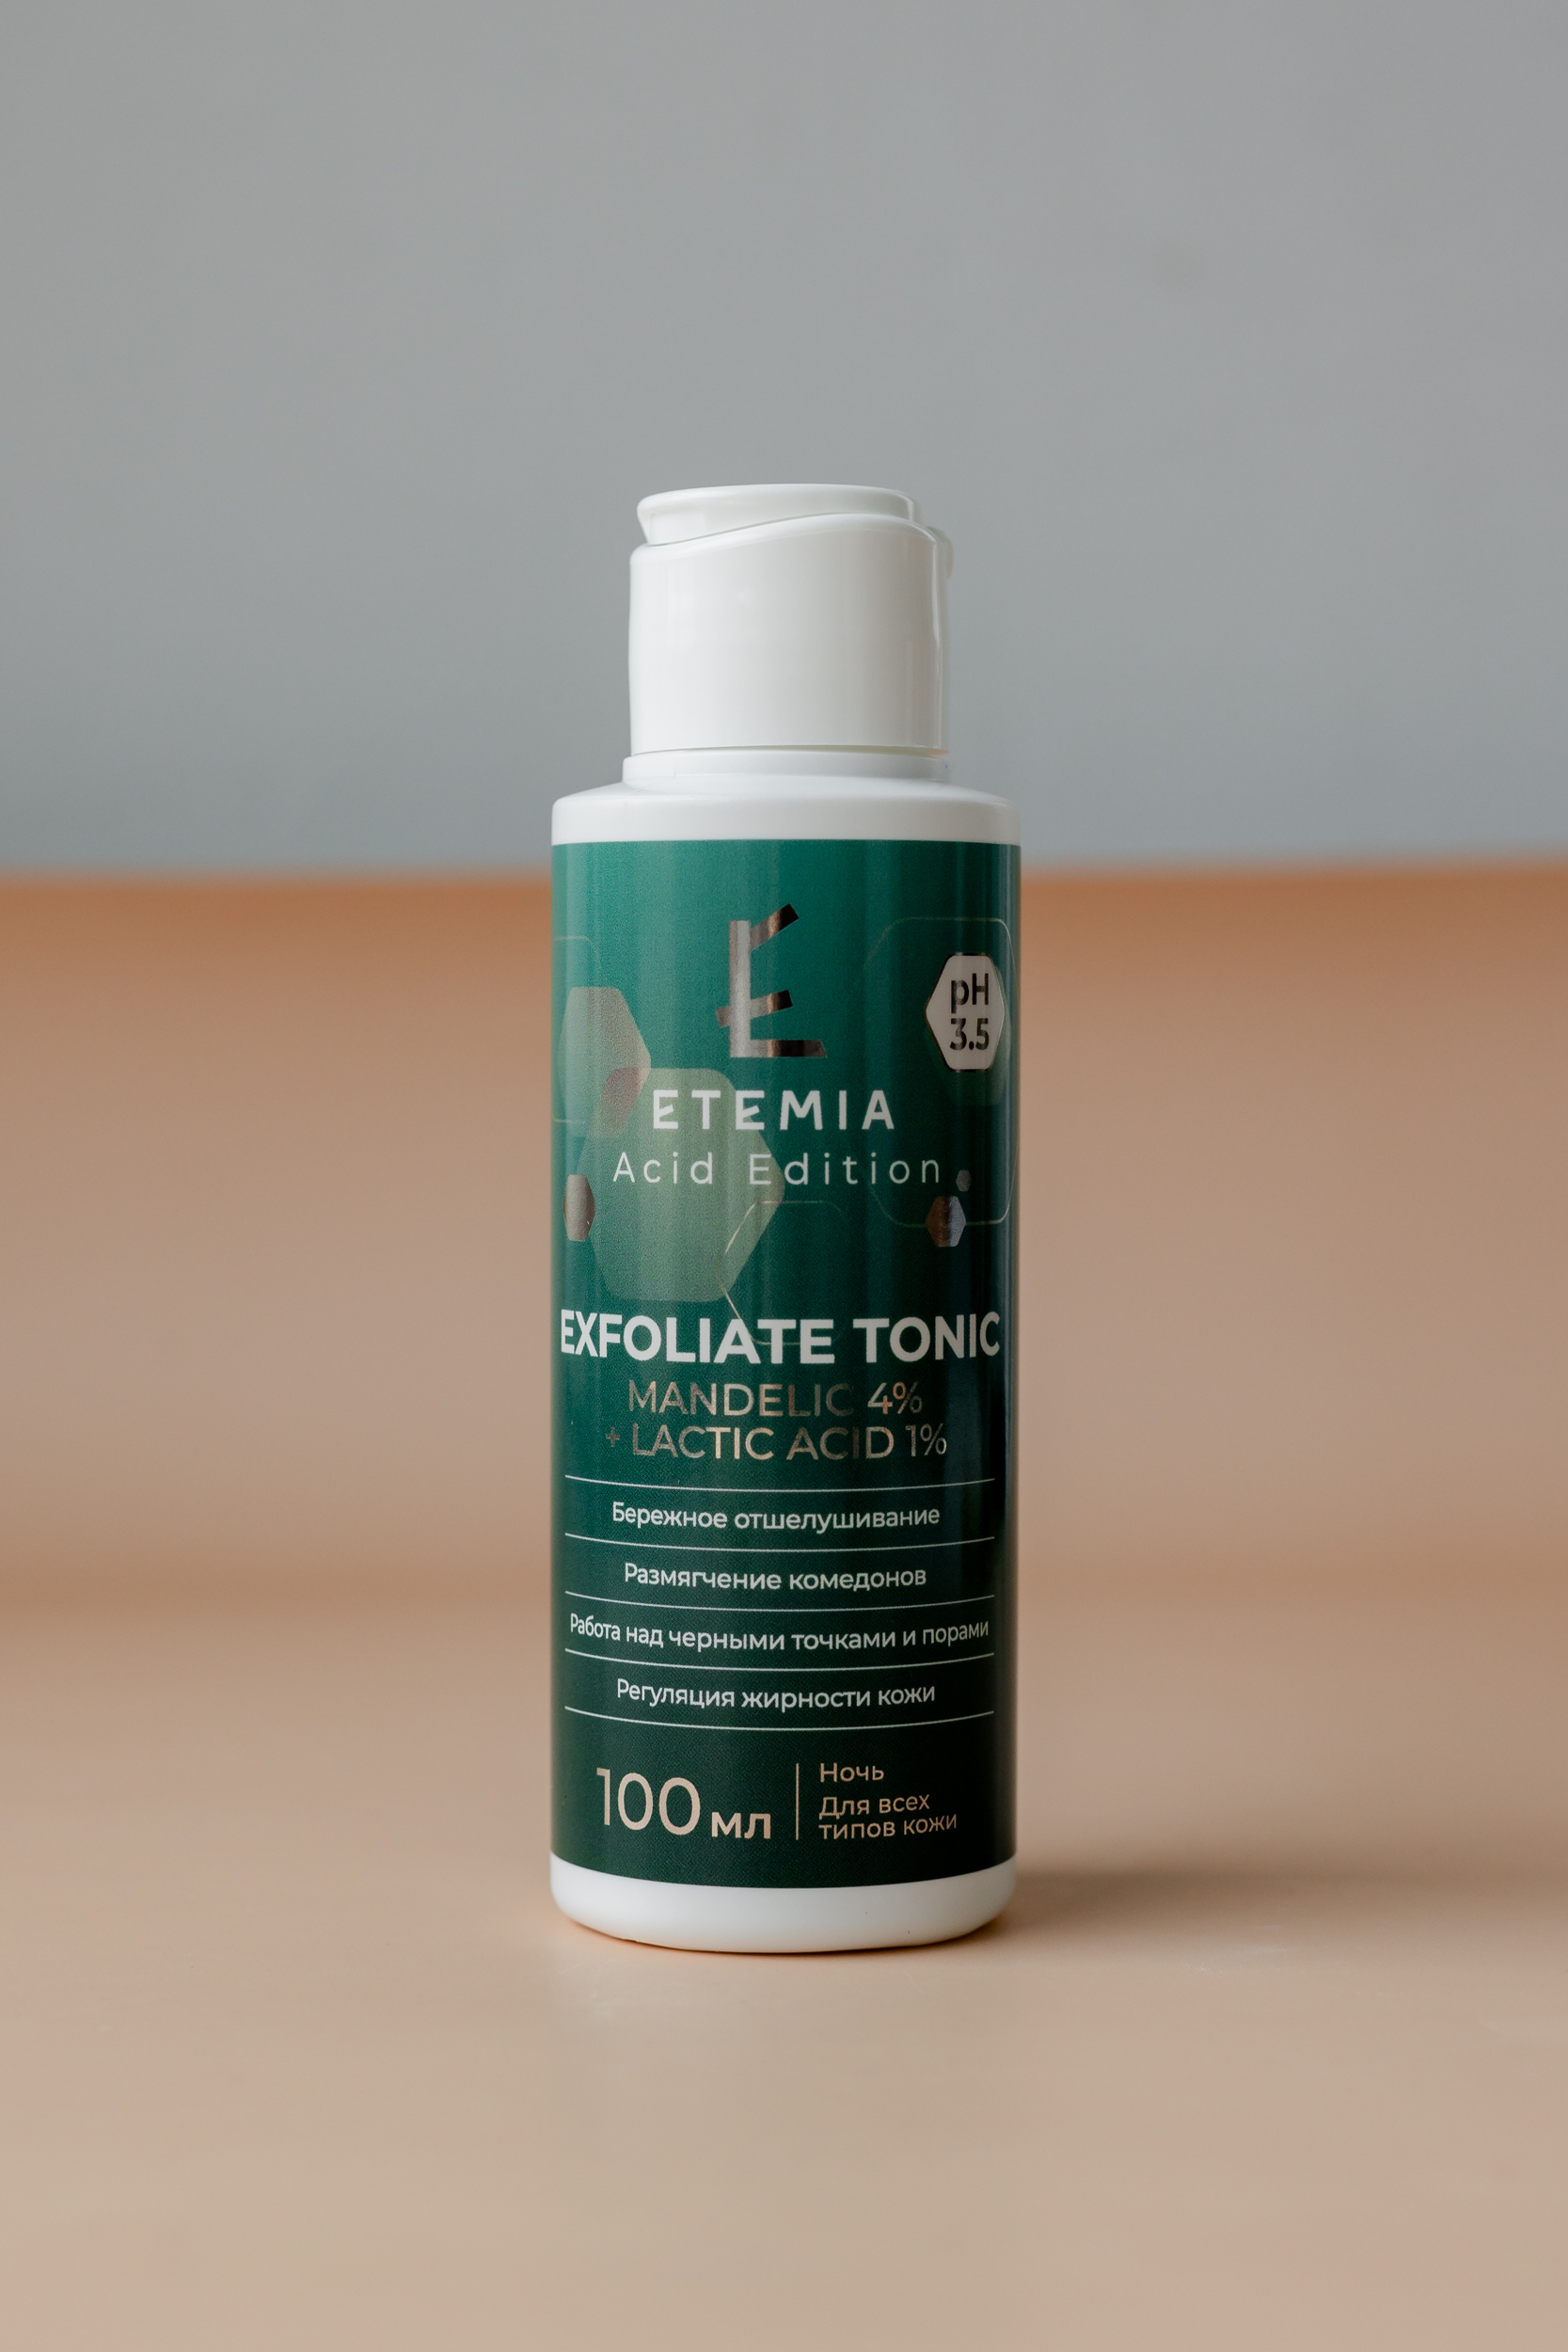 Тоник-эксфолиант для лица ETEMIA Exfoliate Tonic Mandelic 4% + Lactic Acid 1% 100ml - фото 1